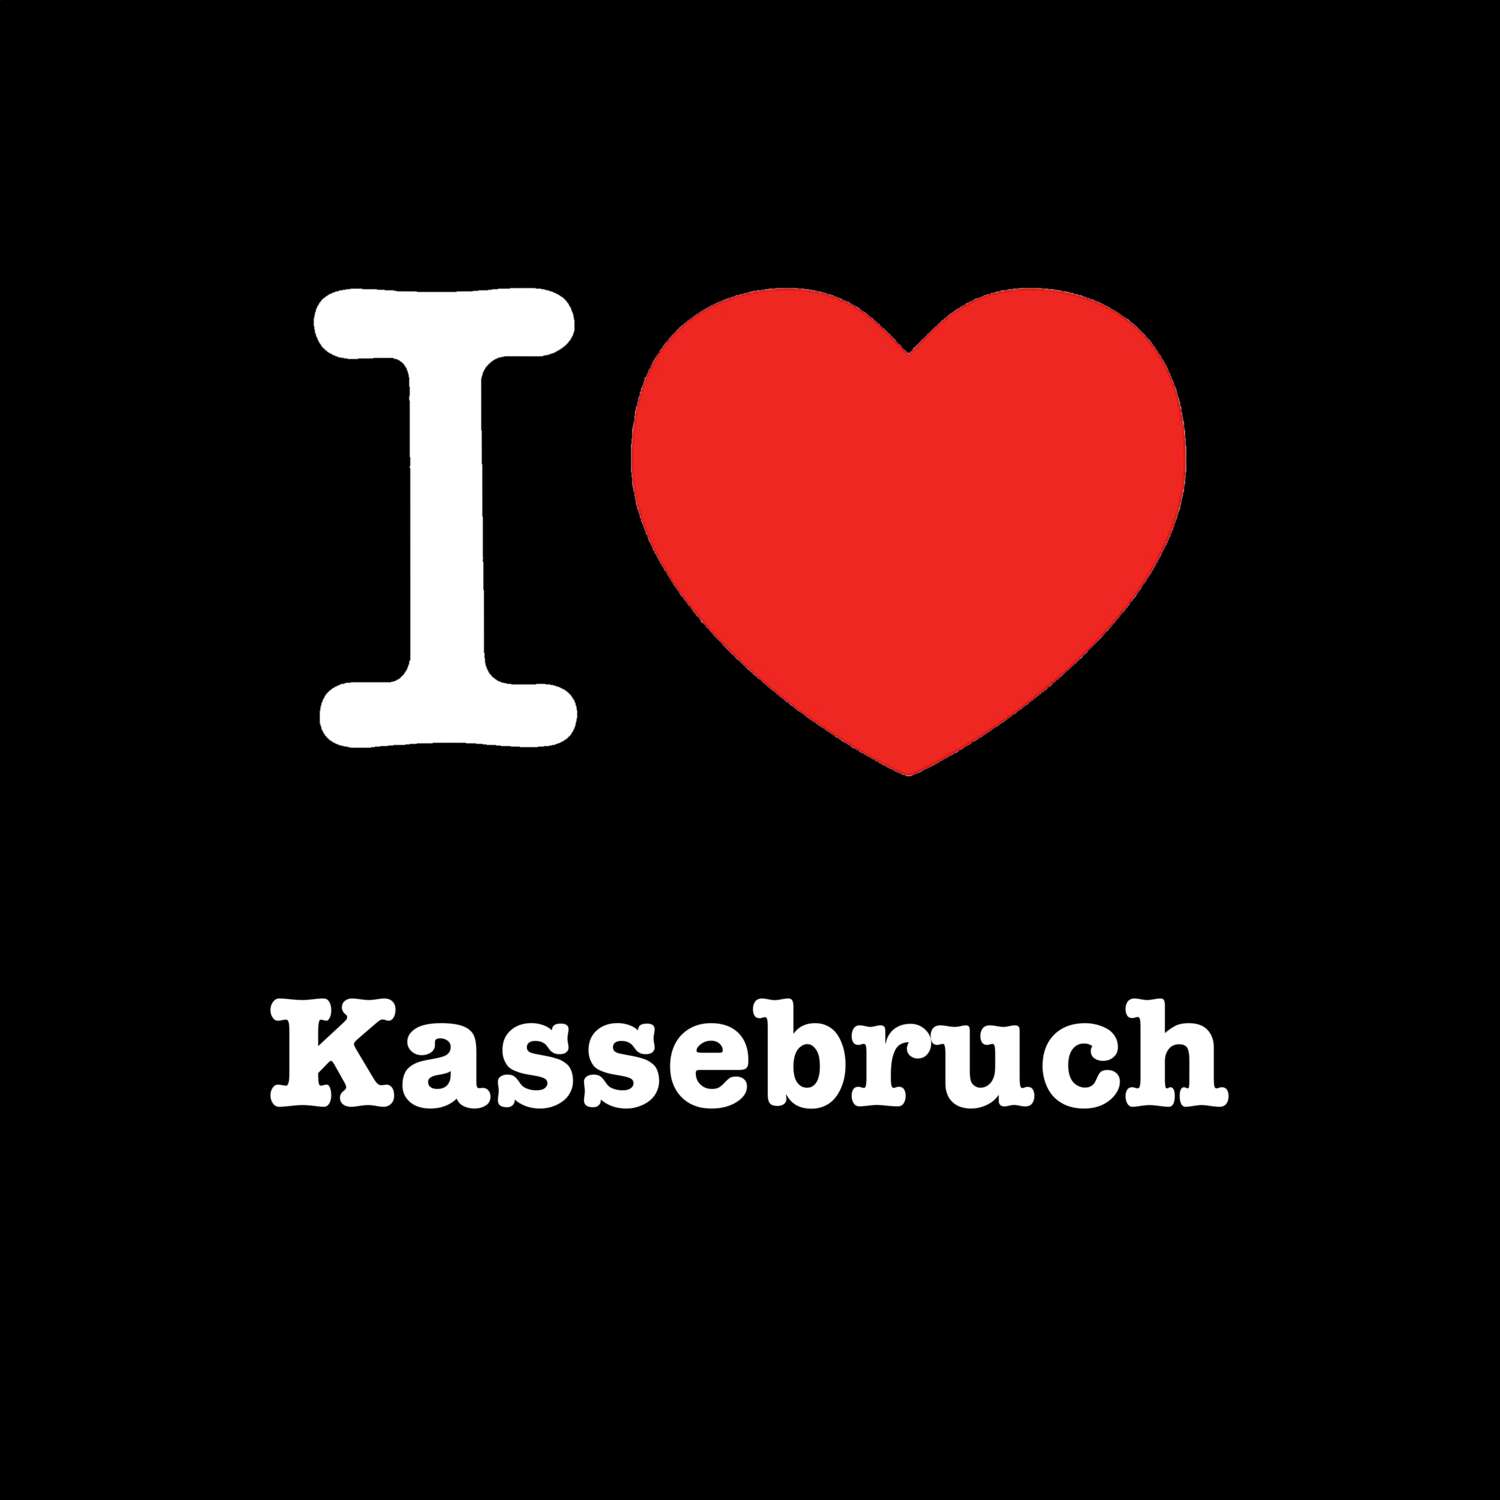 Kassebruch T-Shirt »I love«